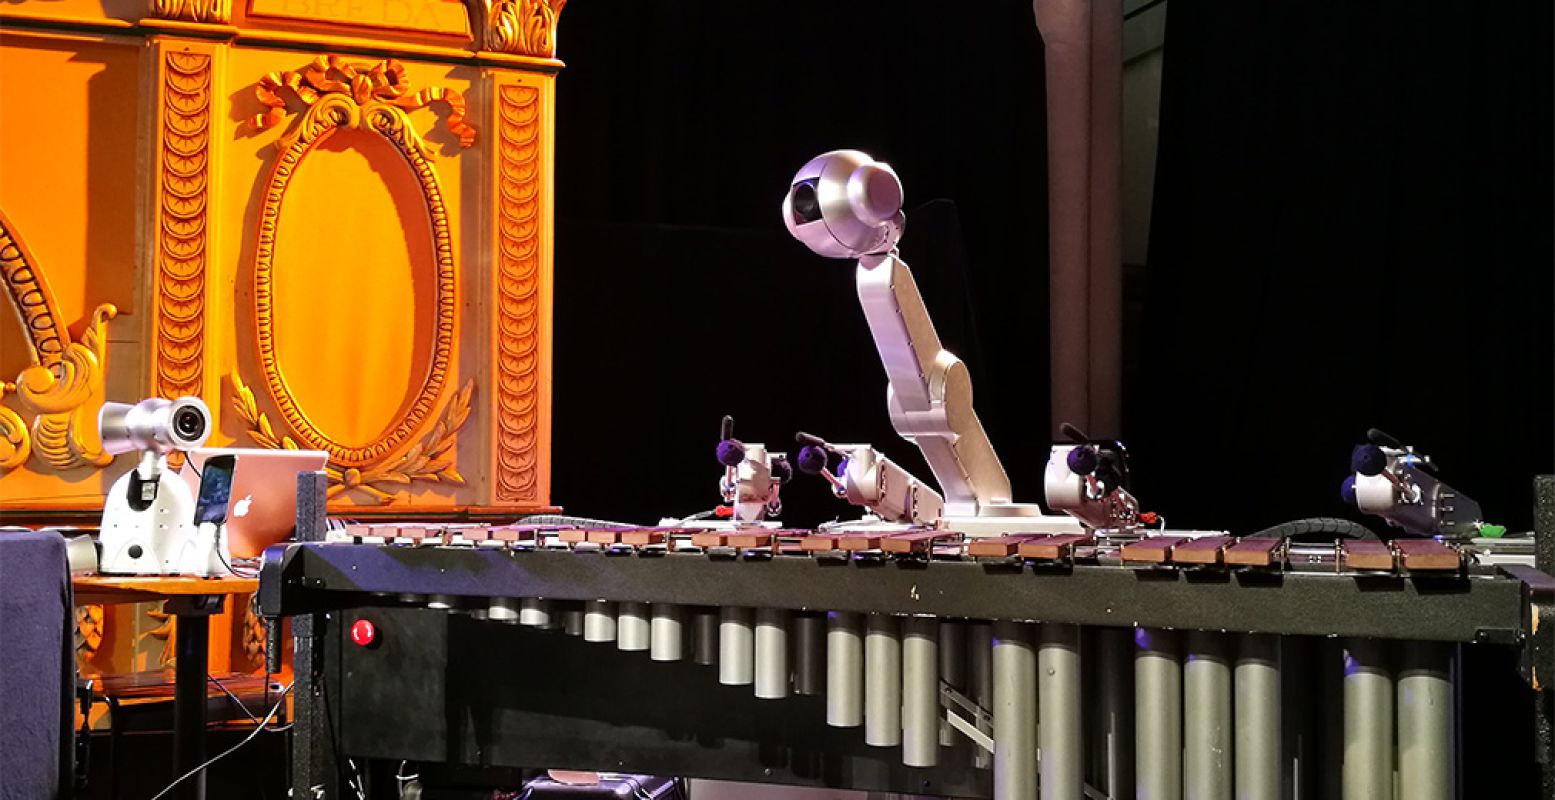 Ontmoet muzikale robots van over de hele wereld in Museum Speelklok. Hier zie je robot Shimon achter de marimba. Foto: DagjeWeg.NL.